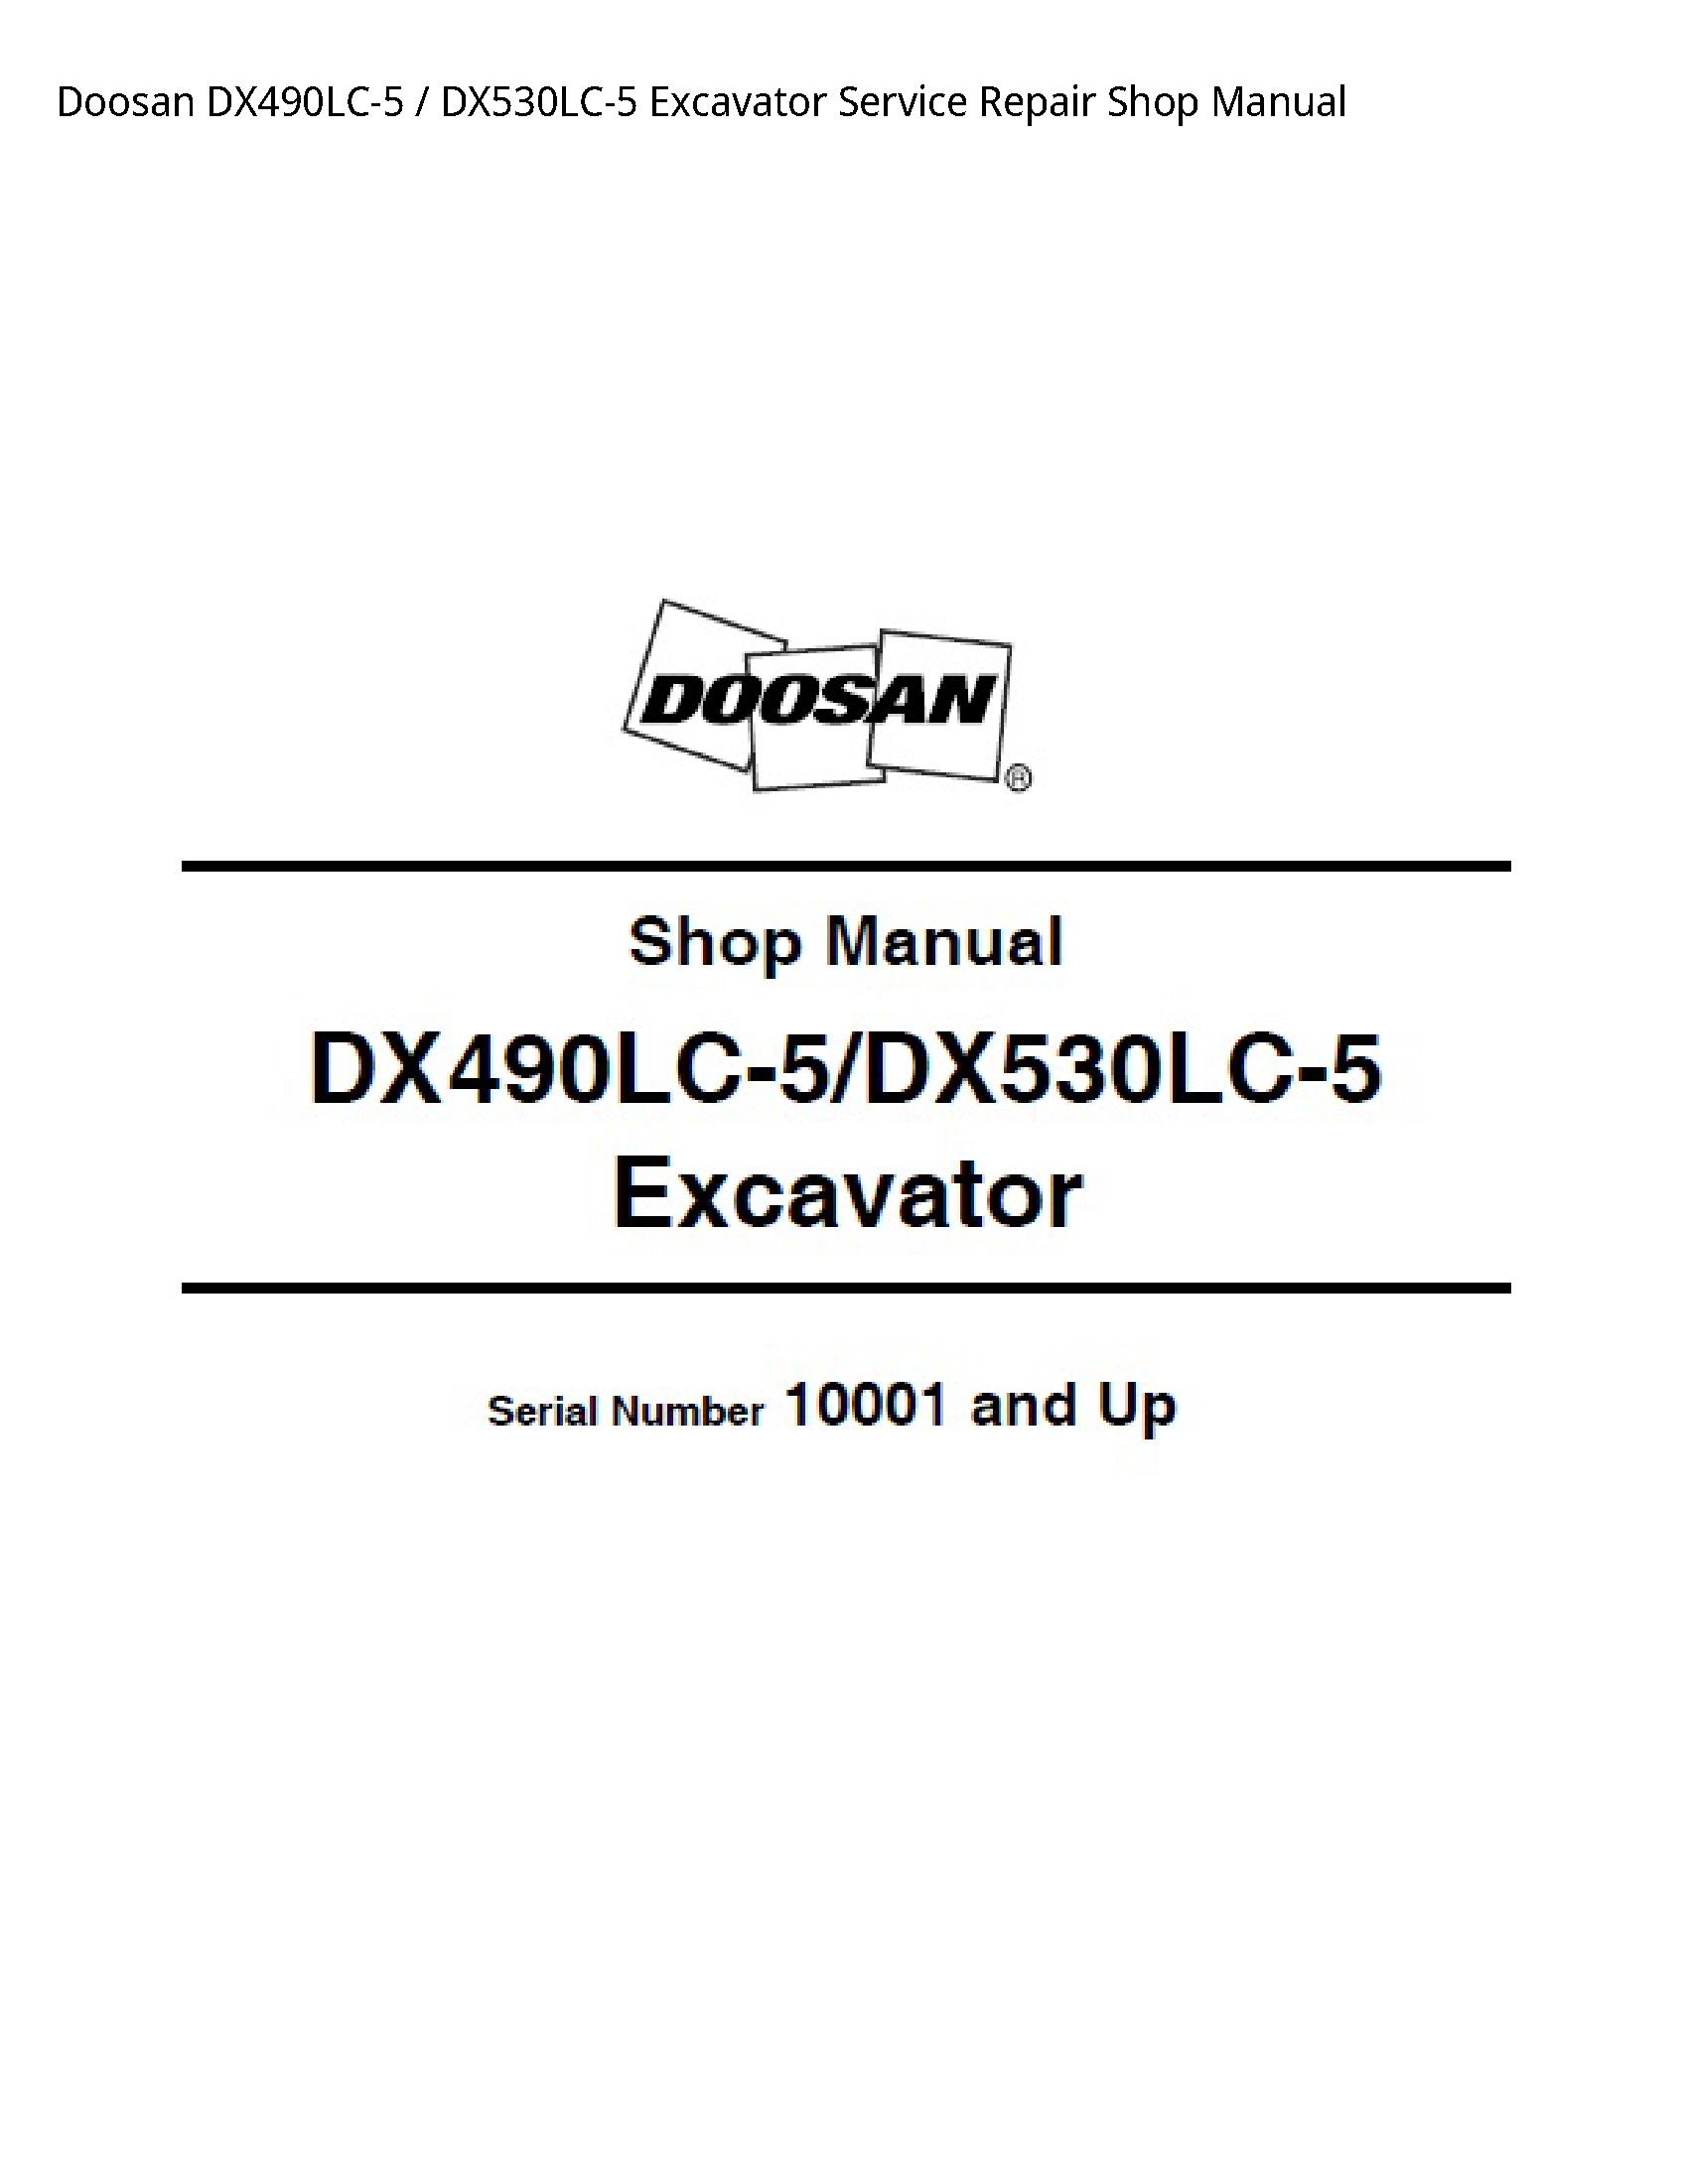 Doosan DX490LC-5 Excavator manual